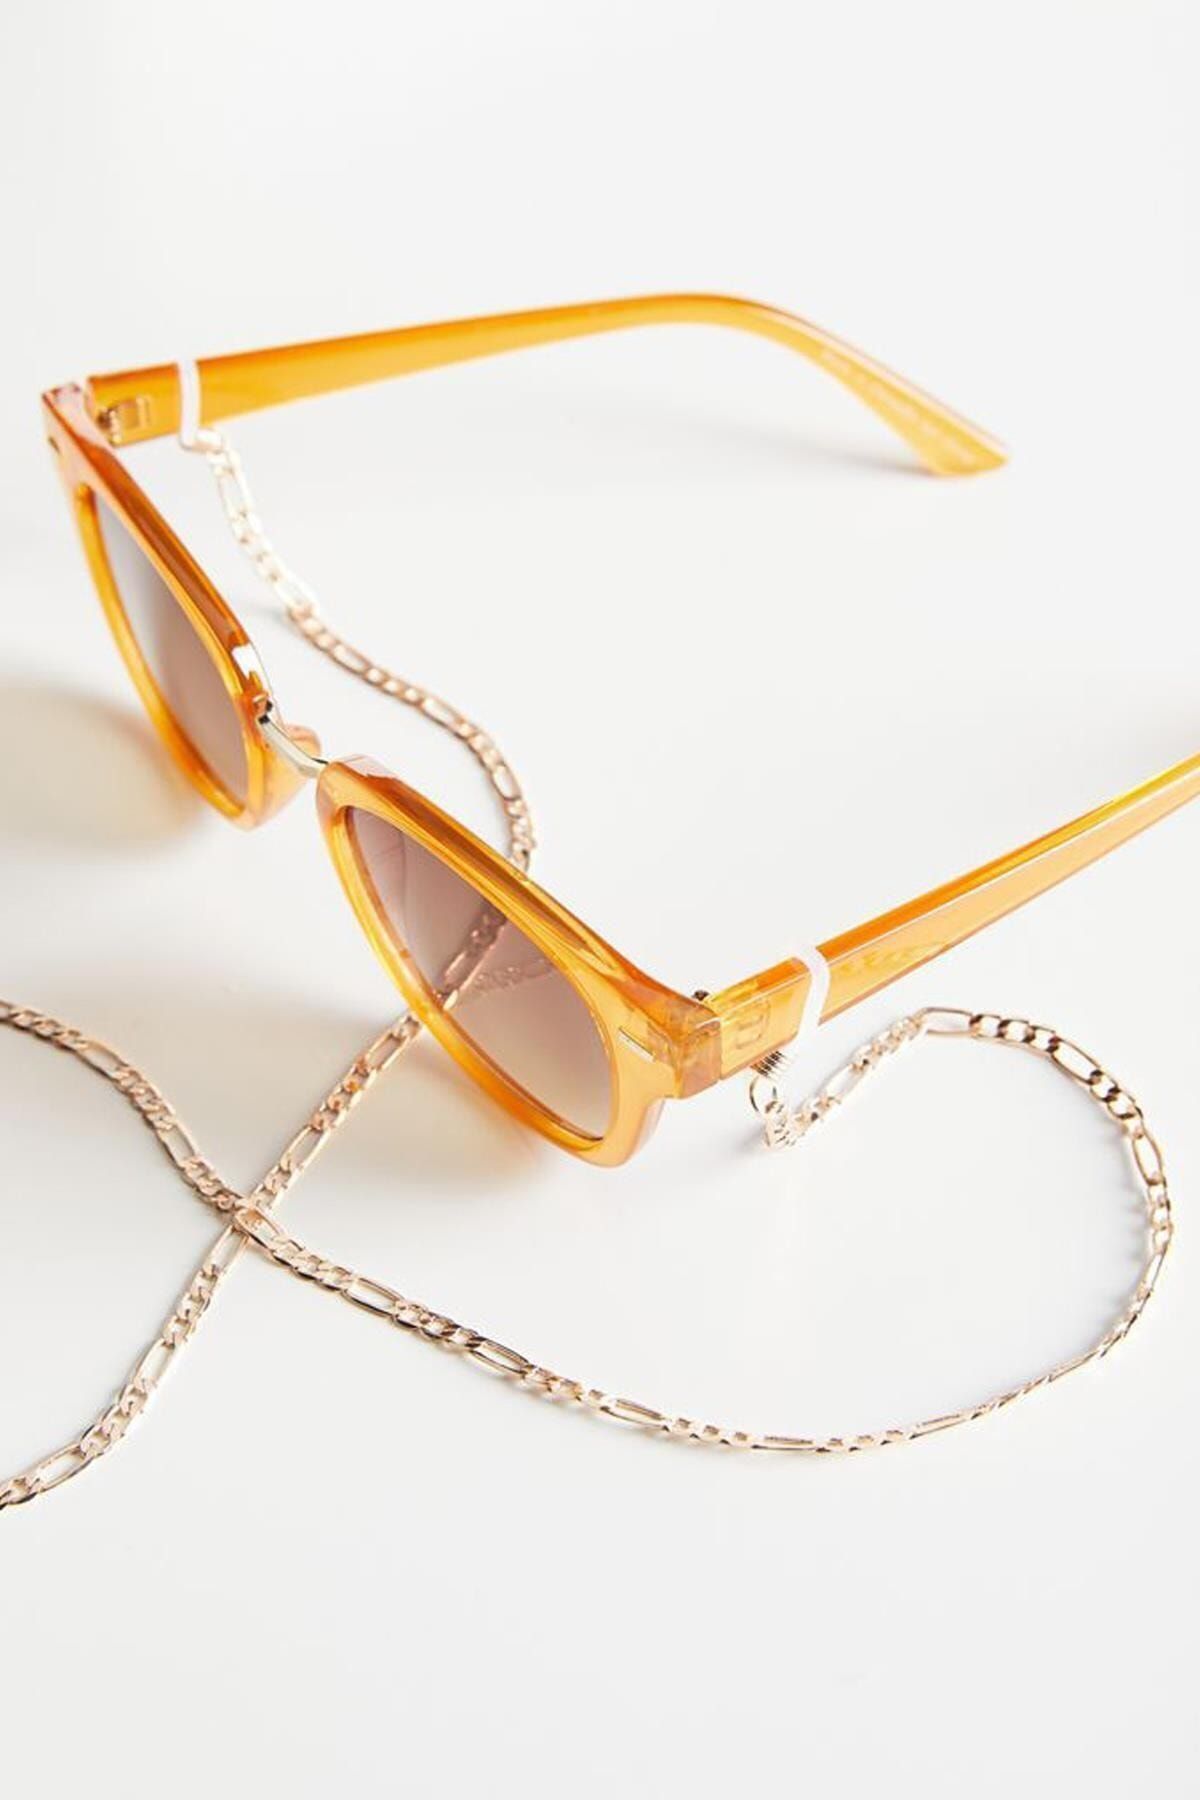 X-Lady Accessories Kalın Zincir Şavin Gözlük Ipi Altın Kaplama